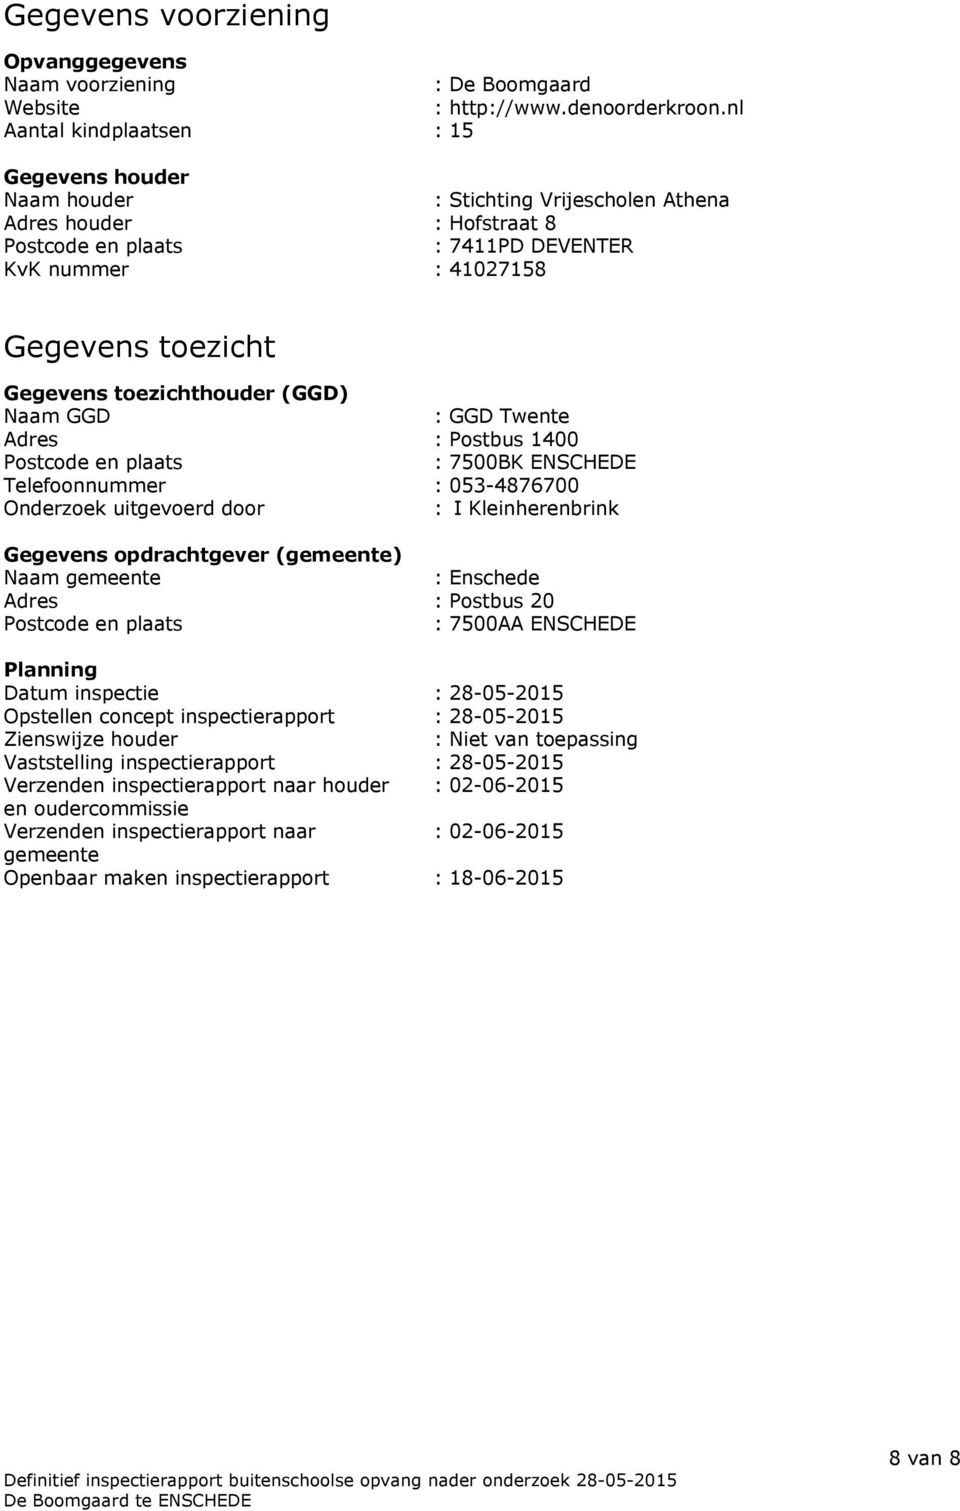 Gegevens toezichthouder (GGD) Naam GGD : GGD Twente Adres : Postbus 1400 Postcode en plaats : 7500BK ENSCHEDE Telefoonnummer : 053-4876700 Onderzoek uitgevoerd door : I Kleinherenbrink Gegevens